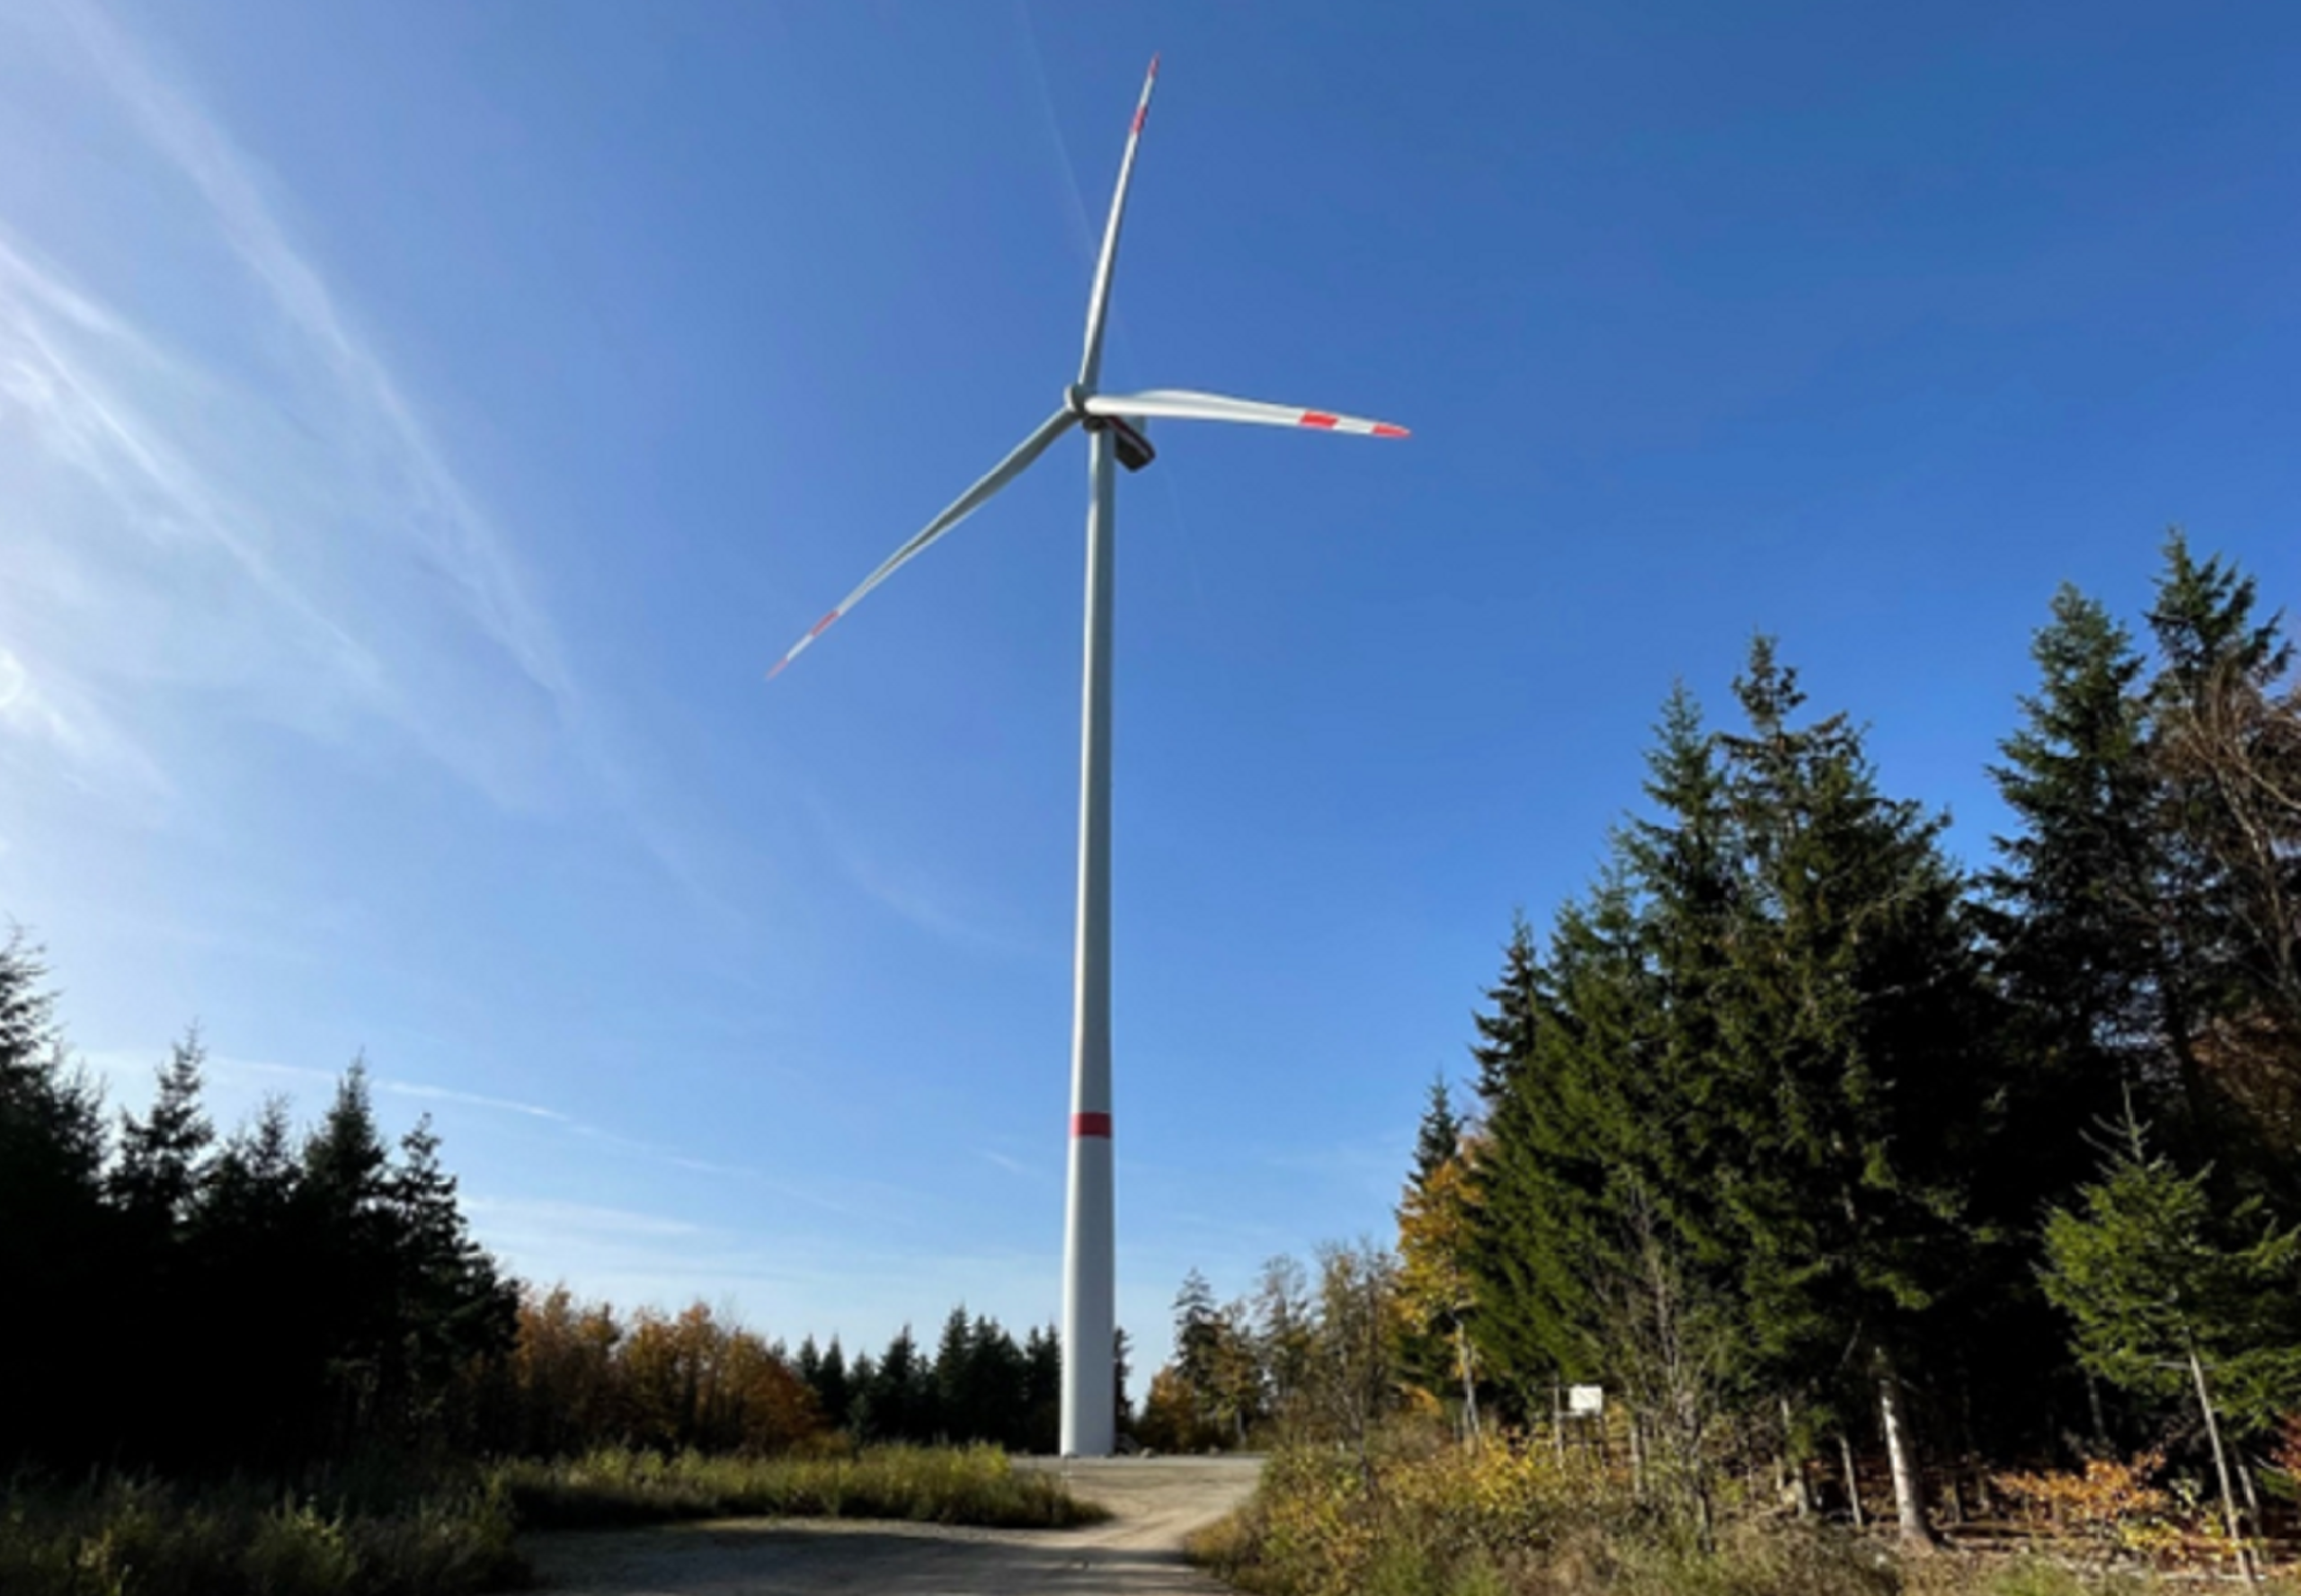 C.A.R.M.E.N.-WebSeminar informiert zur erneuerbaren Energieform Windkraft